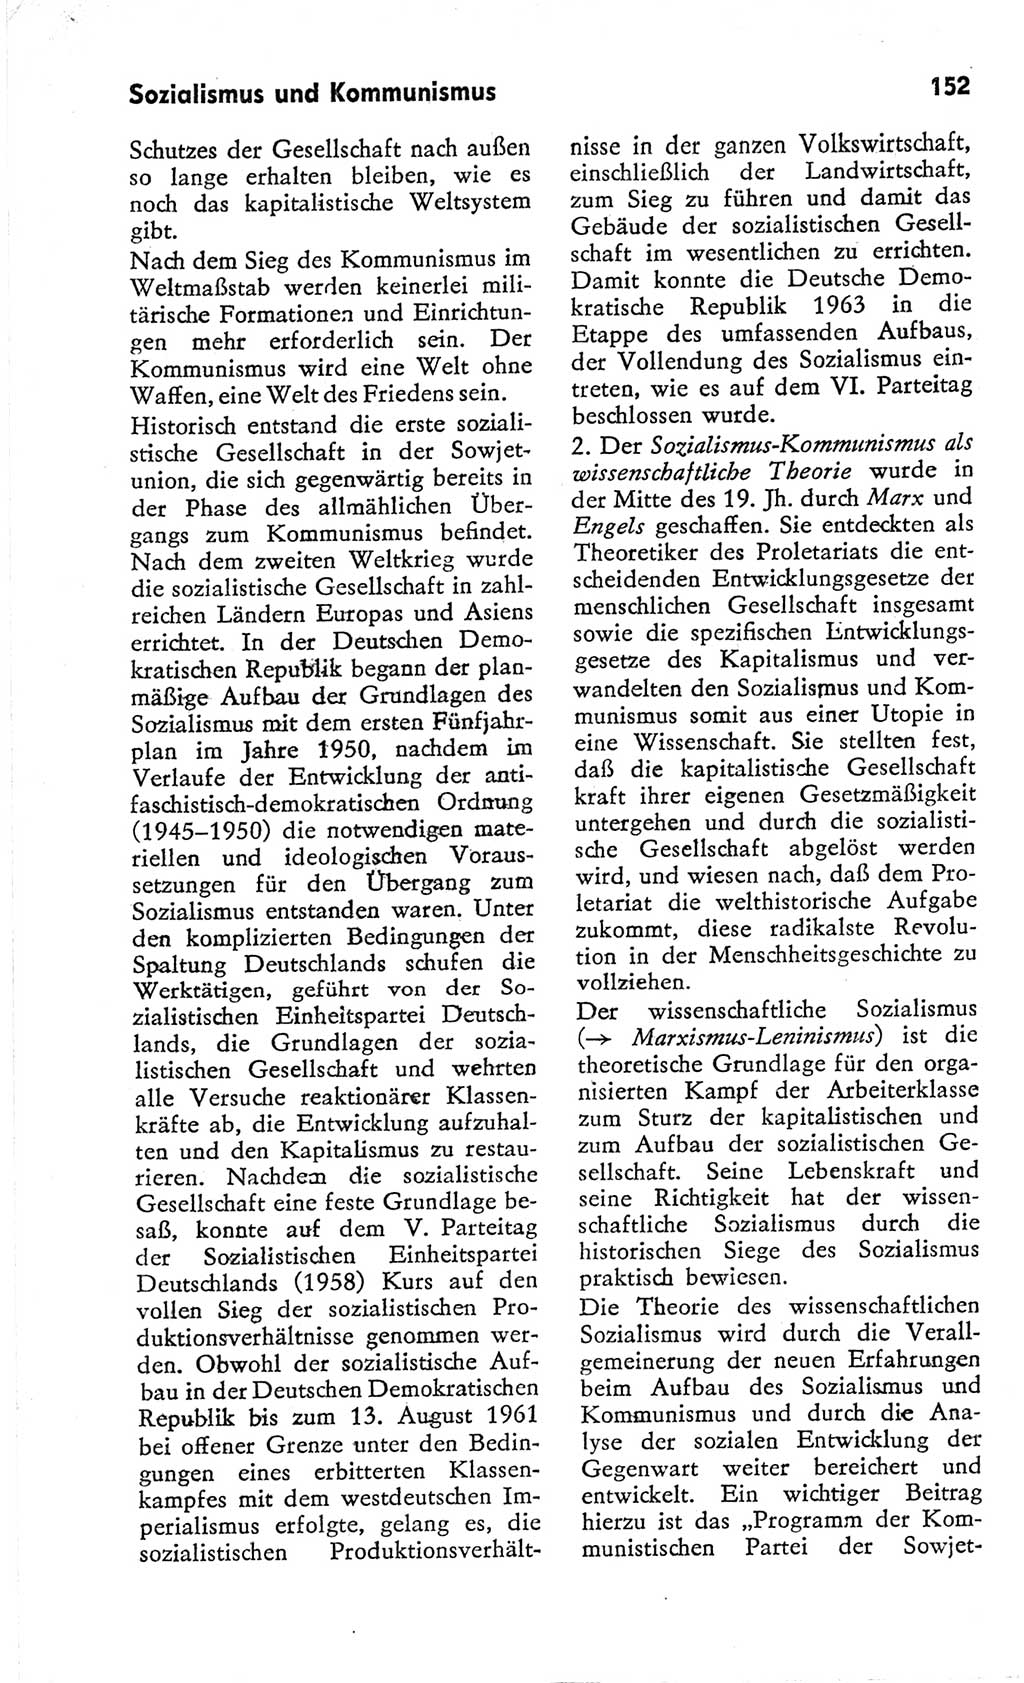 Kleines Wörterbuch der marxistisch-leninistischen Philosophie [Deutsche Demokratische Republik (DDR)] 1966, Seite 152 (Kl. Wb. ML Phil. DDR 1966, S. 152)